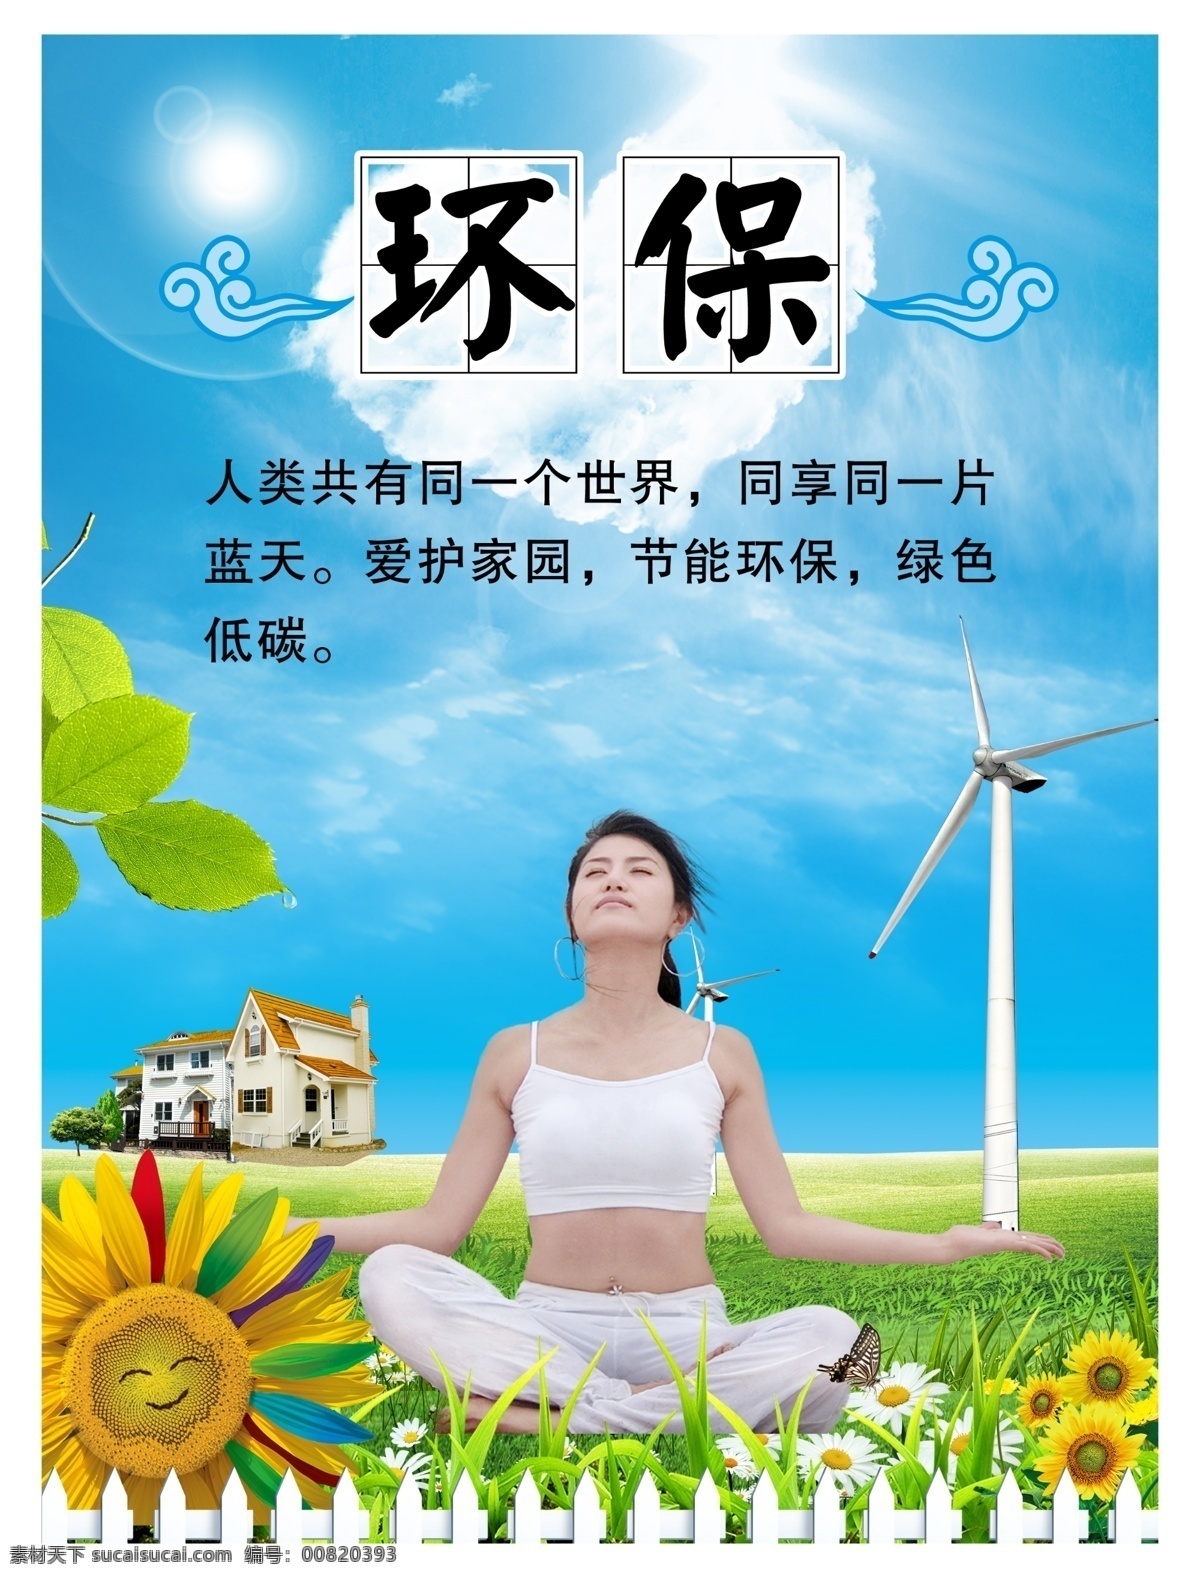 校园环保海报 环保 校园海报 教育 瑜伽 清新 蓝天白云 新能源